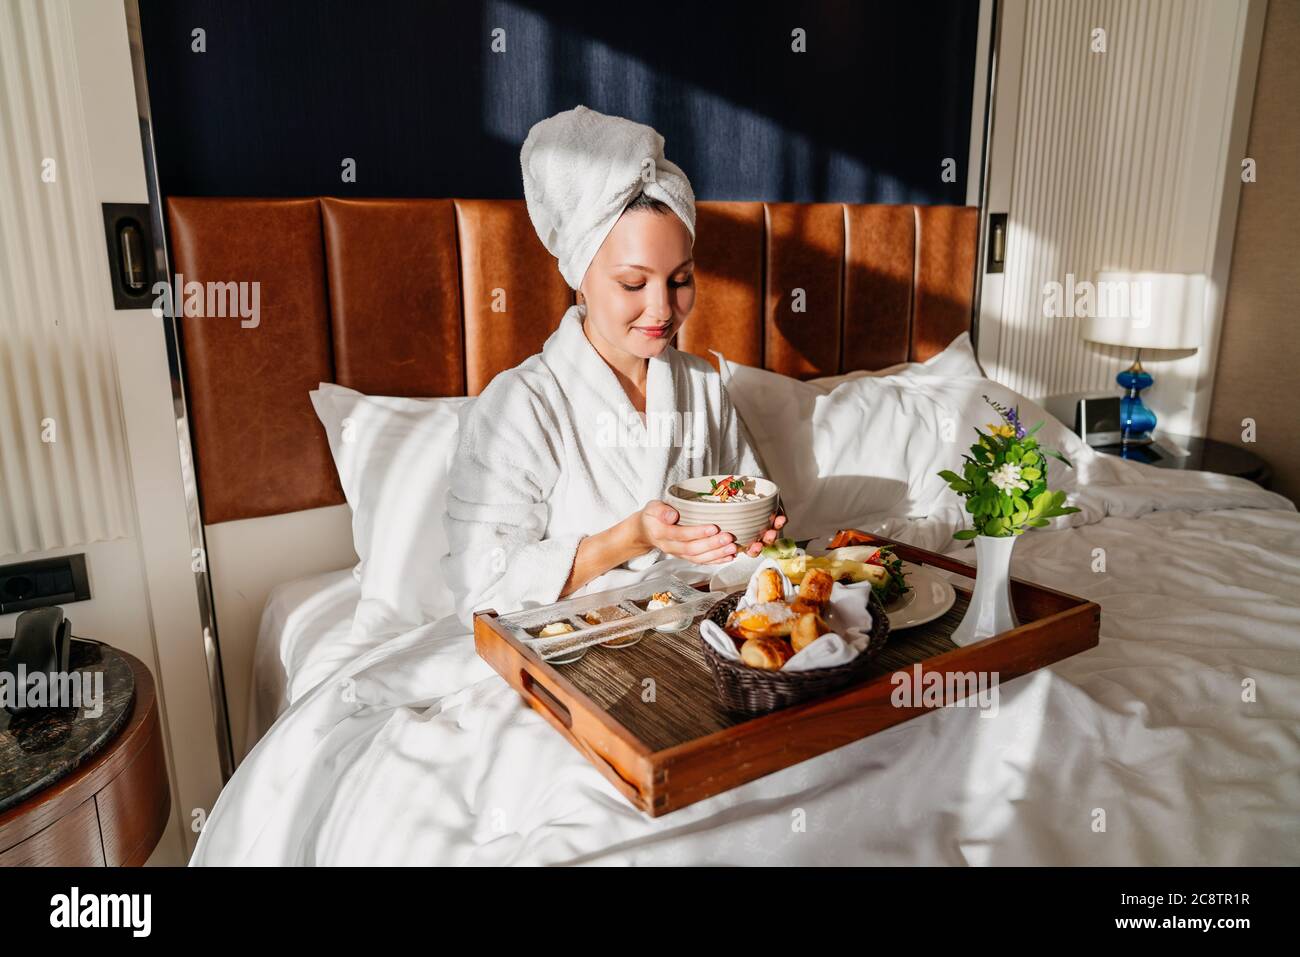 belle femme appréciant son petit déjeuner dans un lit confortable. Concept de service d'étage de l'hôtel. Photo de haute qualité Banque D'Images